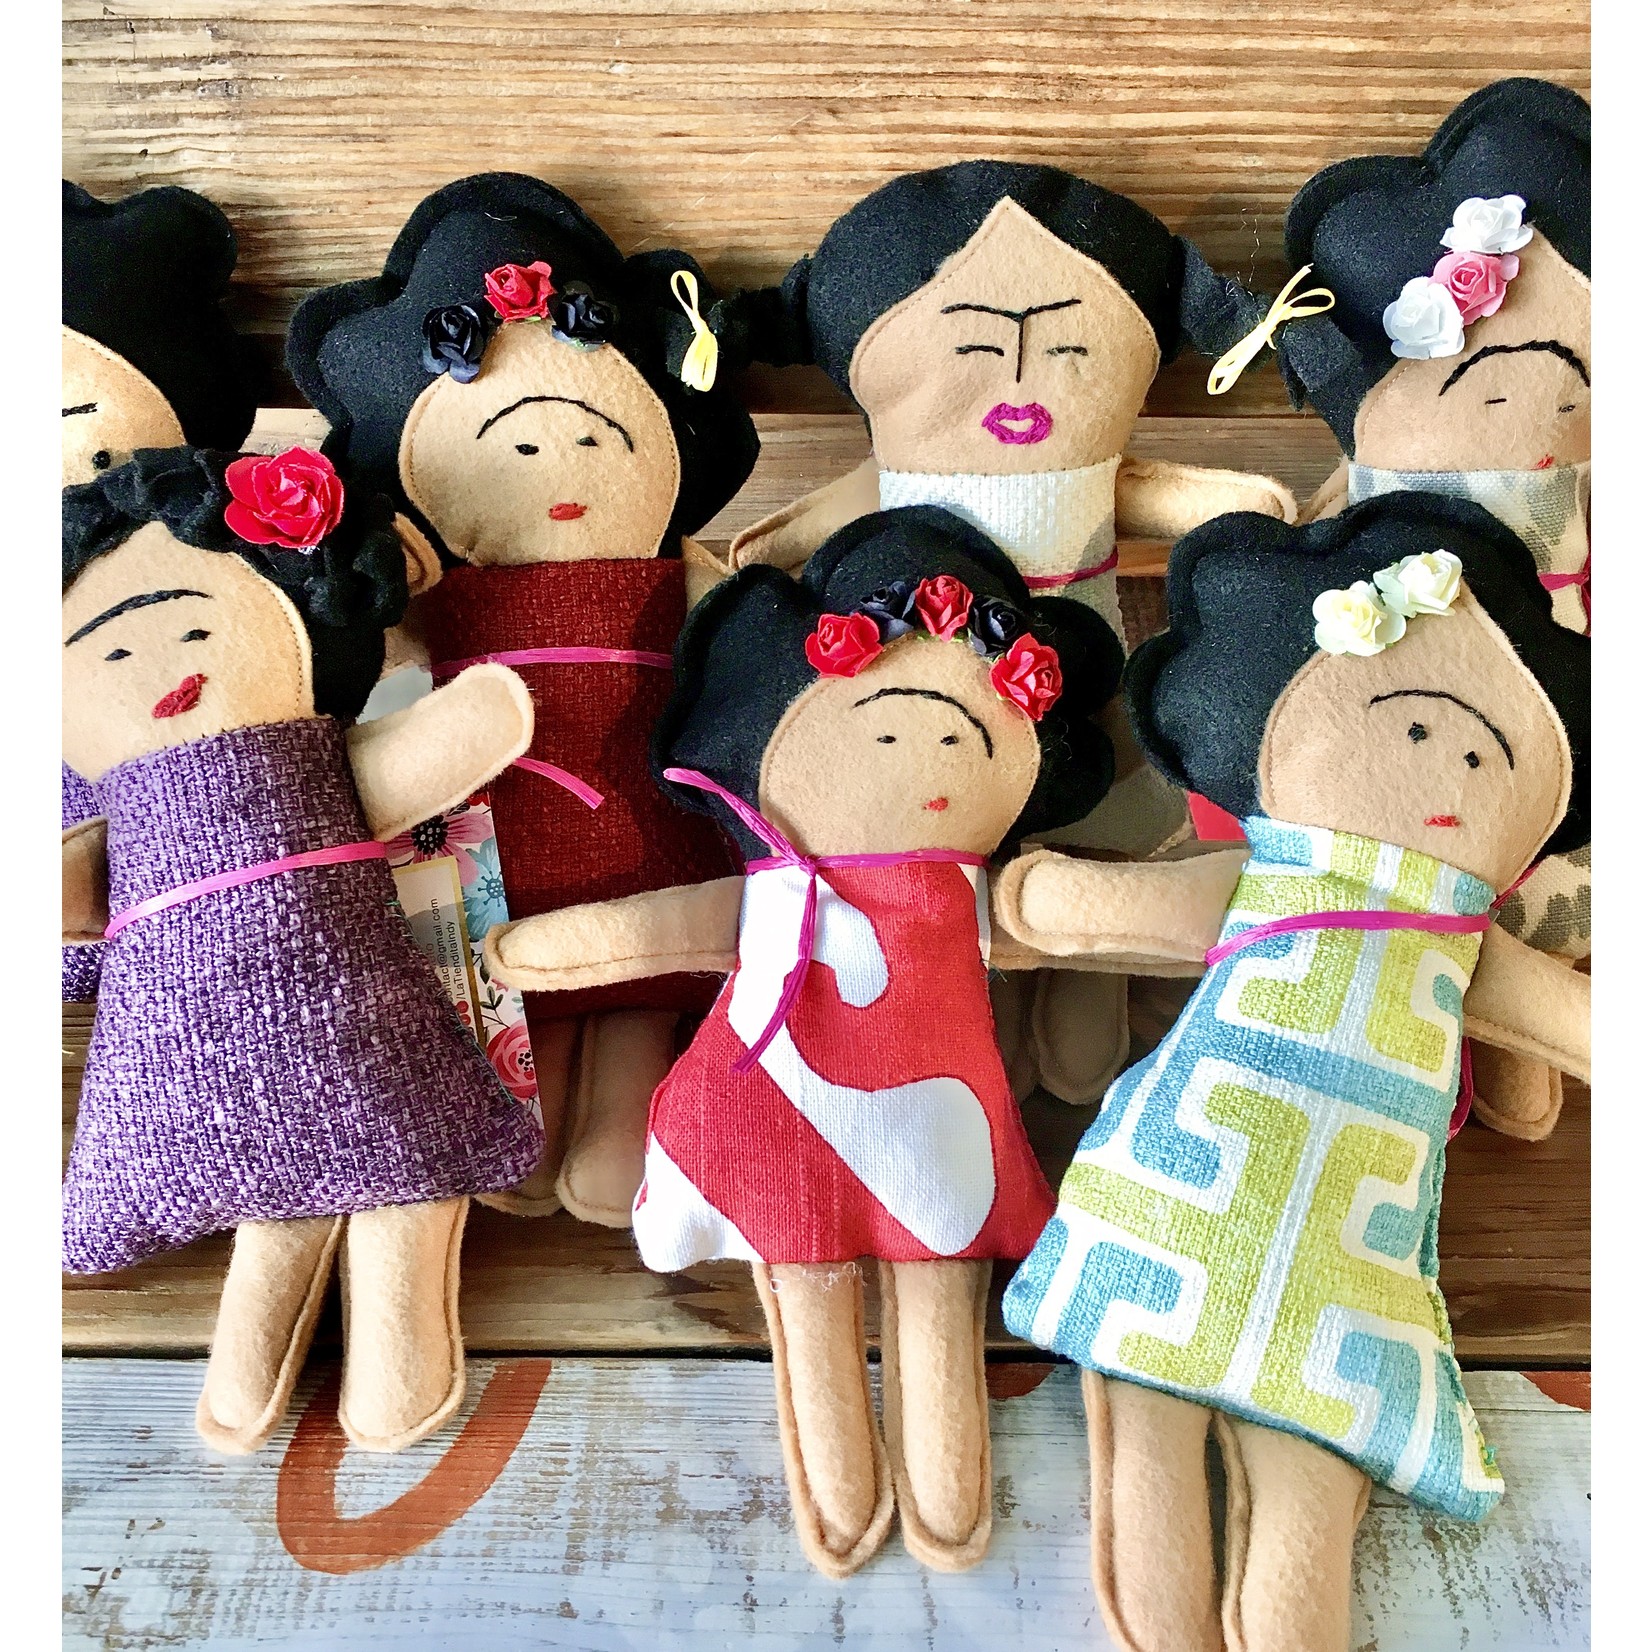 La Tiendita Frida Kahlo Dolls